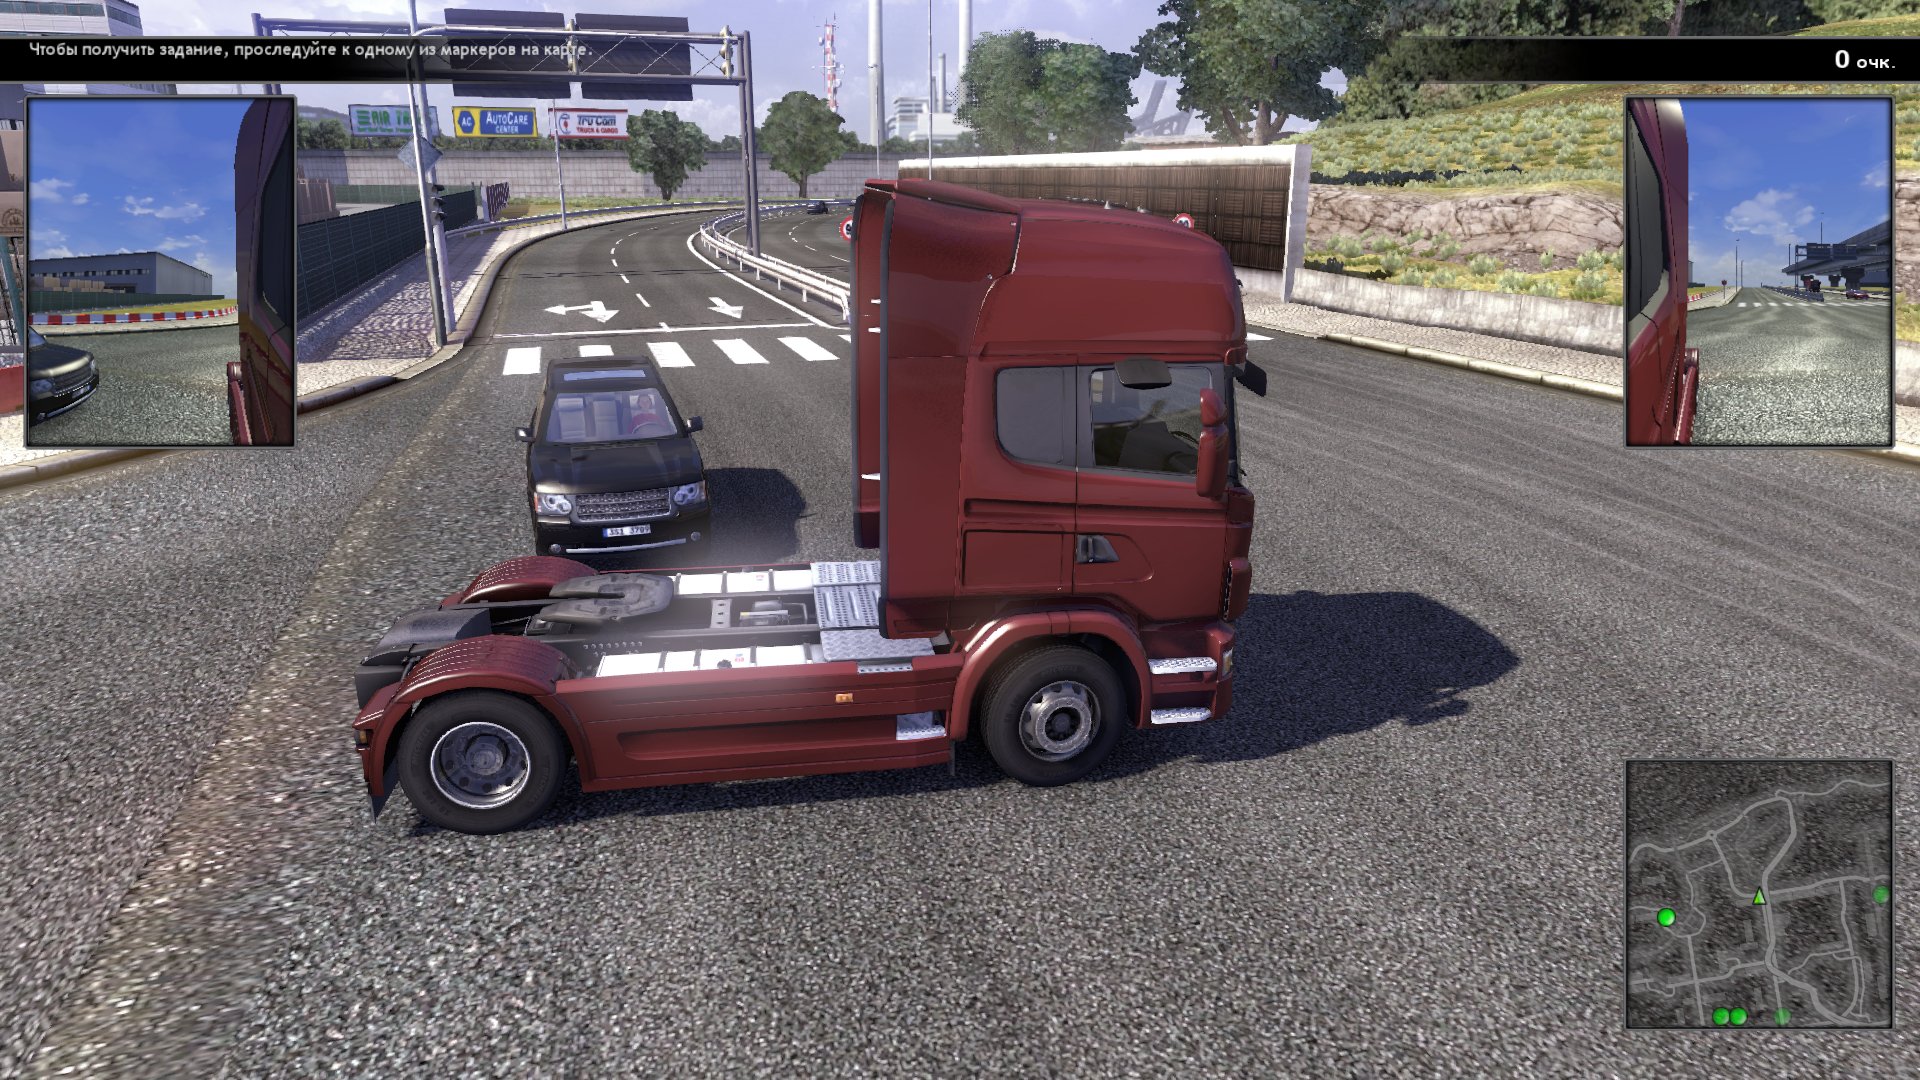 Новый грузовик игры. Игра Scania Truck Driving Simulator. Скания трак драйв симулятор. Scania Truck Driving Simulator 2. Scania.Truck Driving Simulator.v 1.5.0.